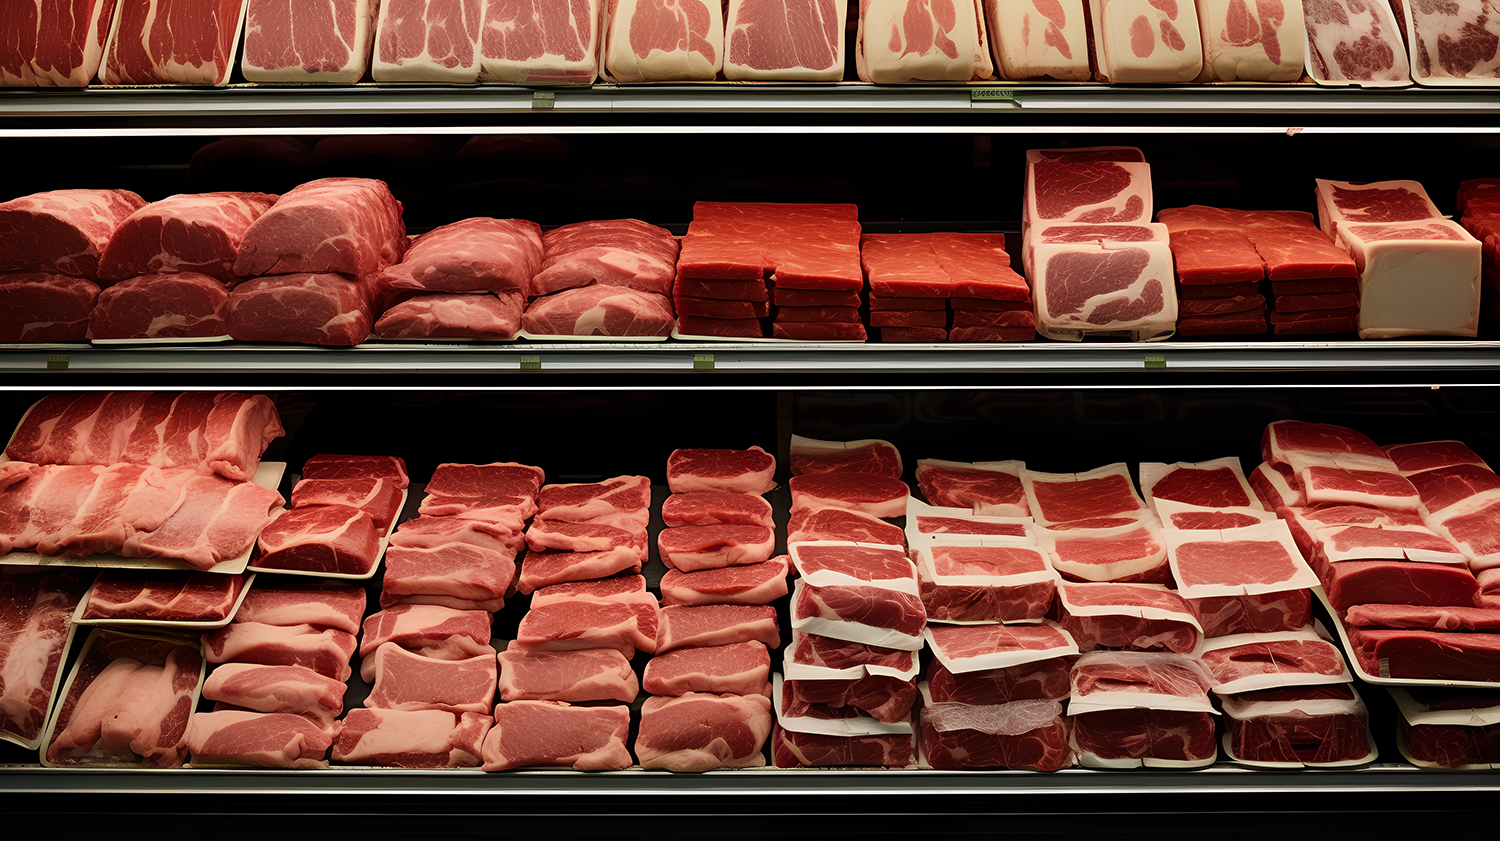 核磁共振技术在肉品研究中的应用